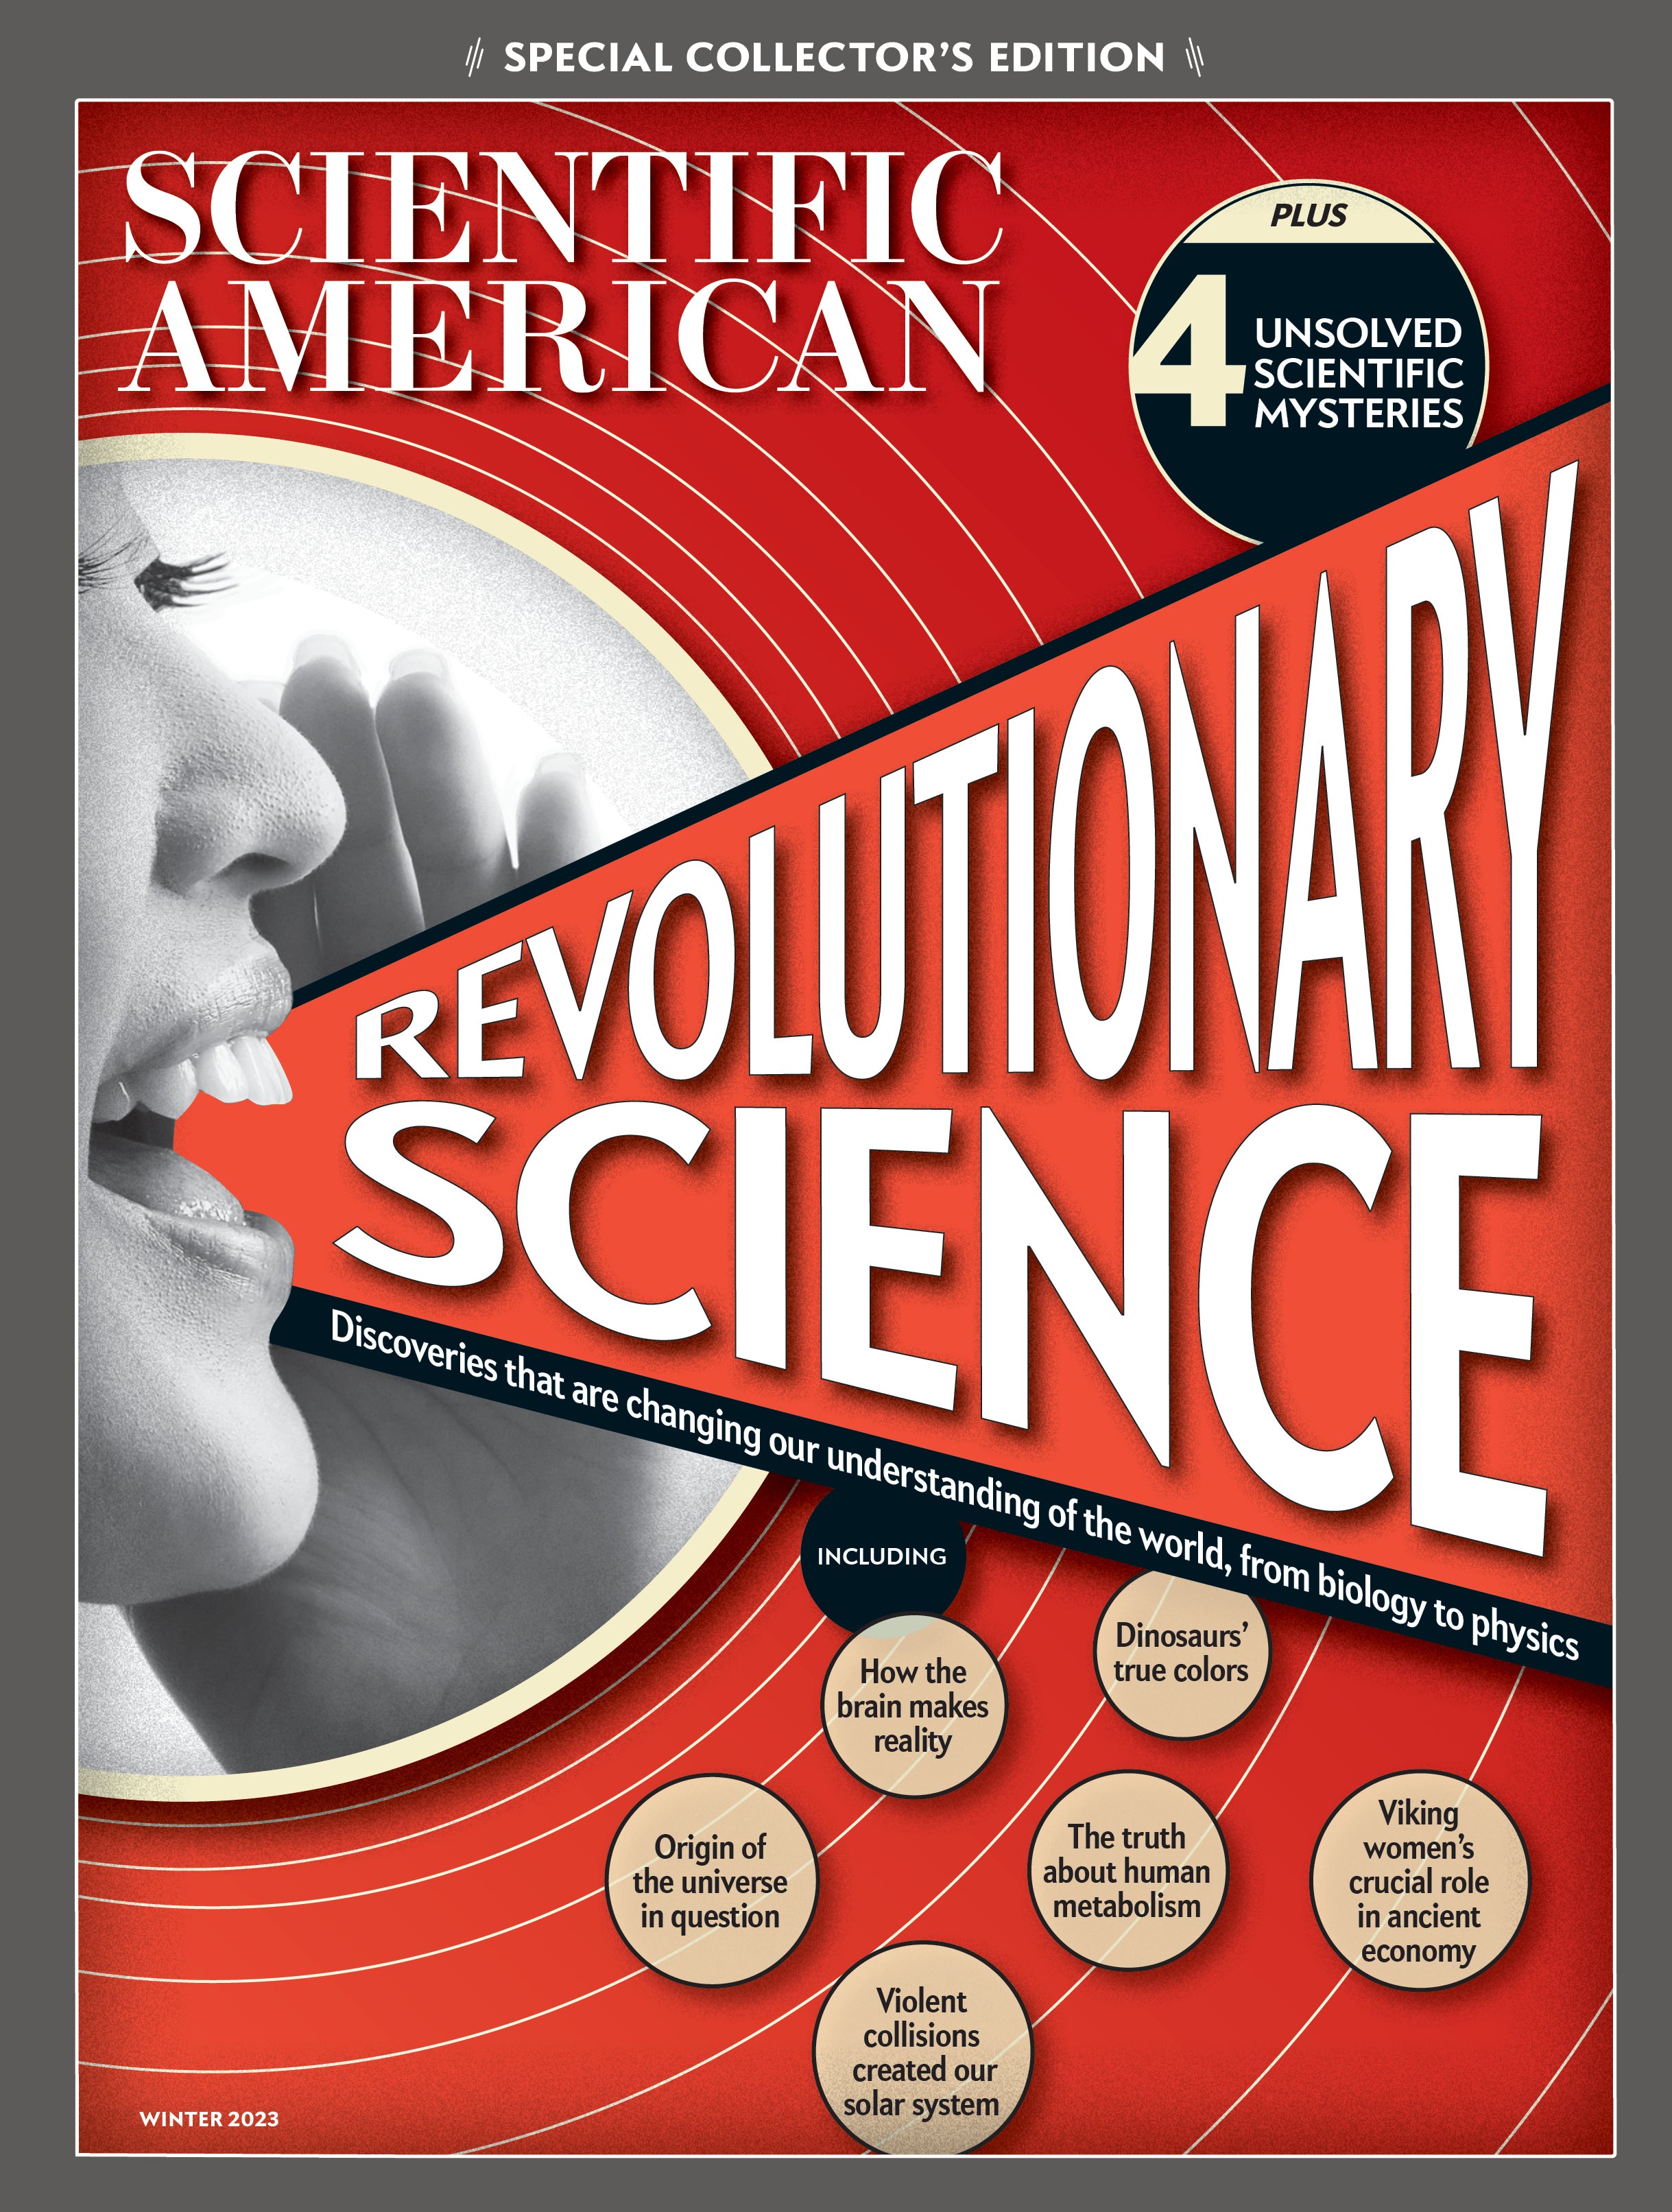 Scientific American Special Collector's Edition: Revolutionary Science